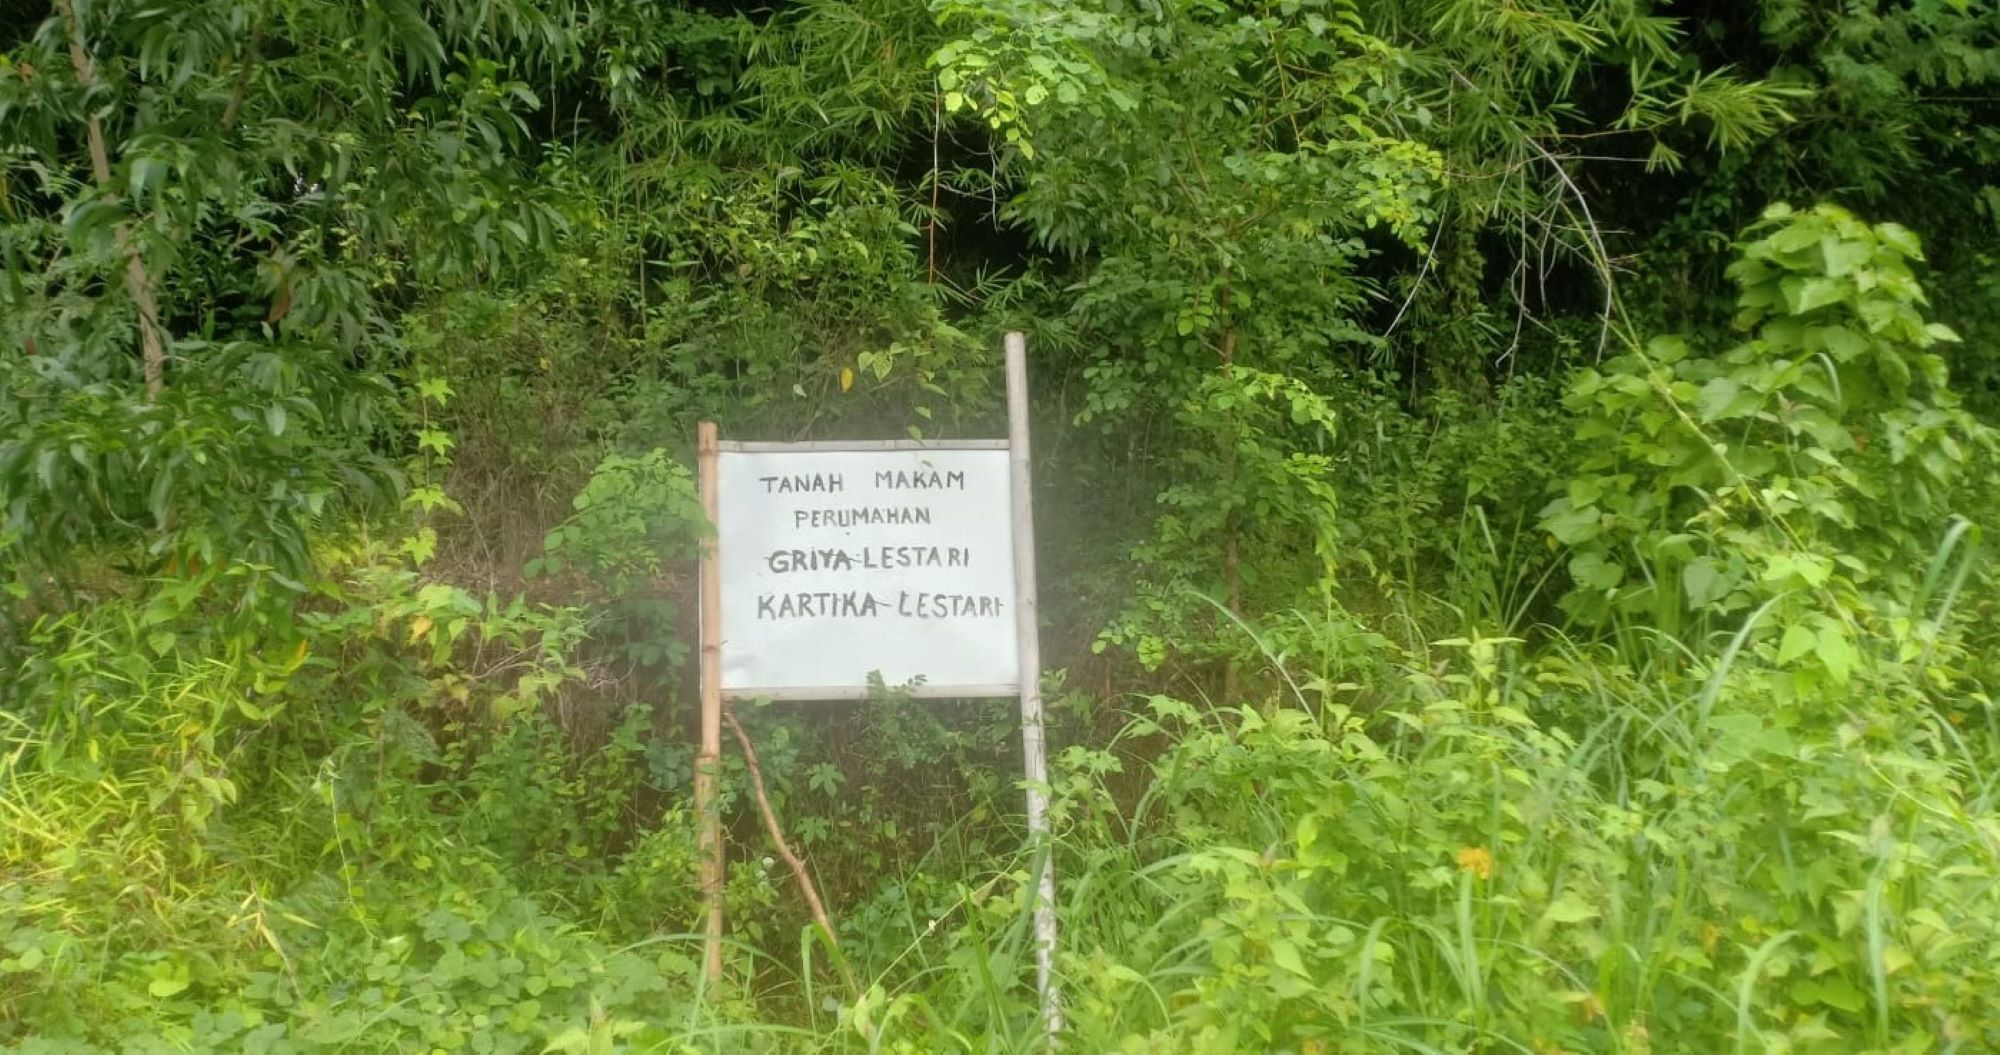 Pengembang Perum Griya Kartika Lestari memasangkan plak yang menunjukan bahwa lahan tersebut untuk kawasan kuburan atau pemakaman di Desa Ciawigebang Kecamatan Ciawigebang.